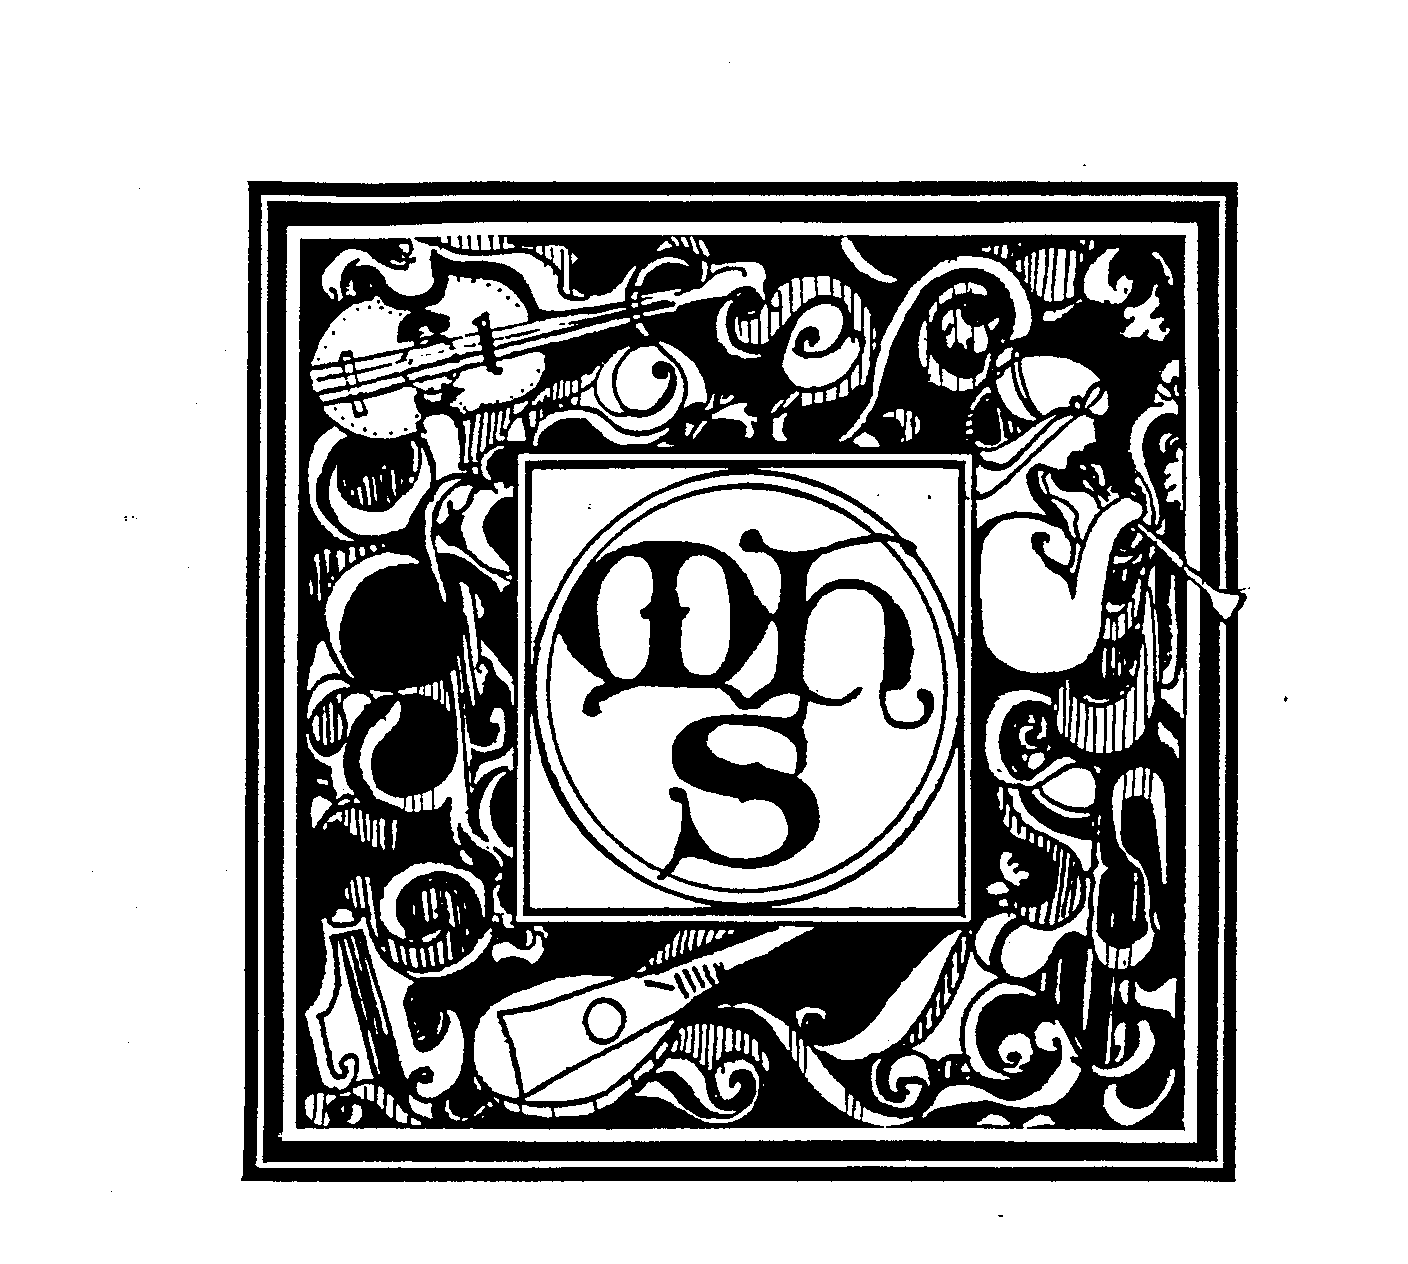 Trademark Logo MHS